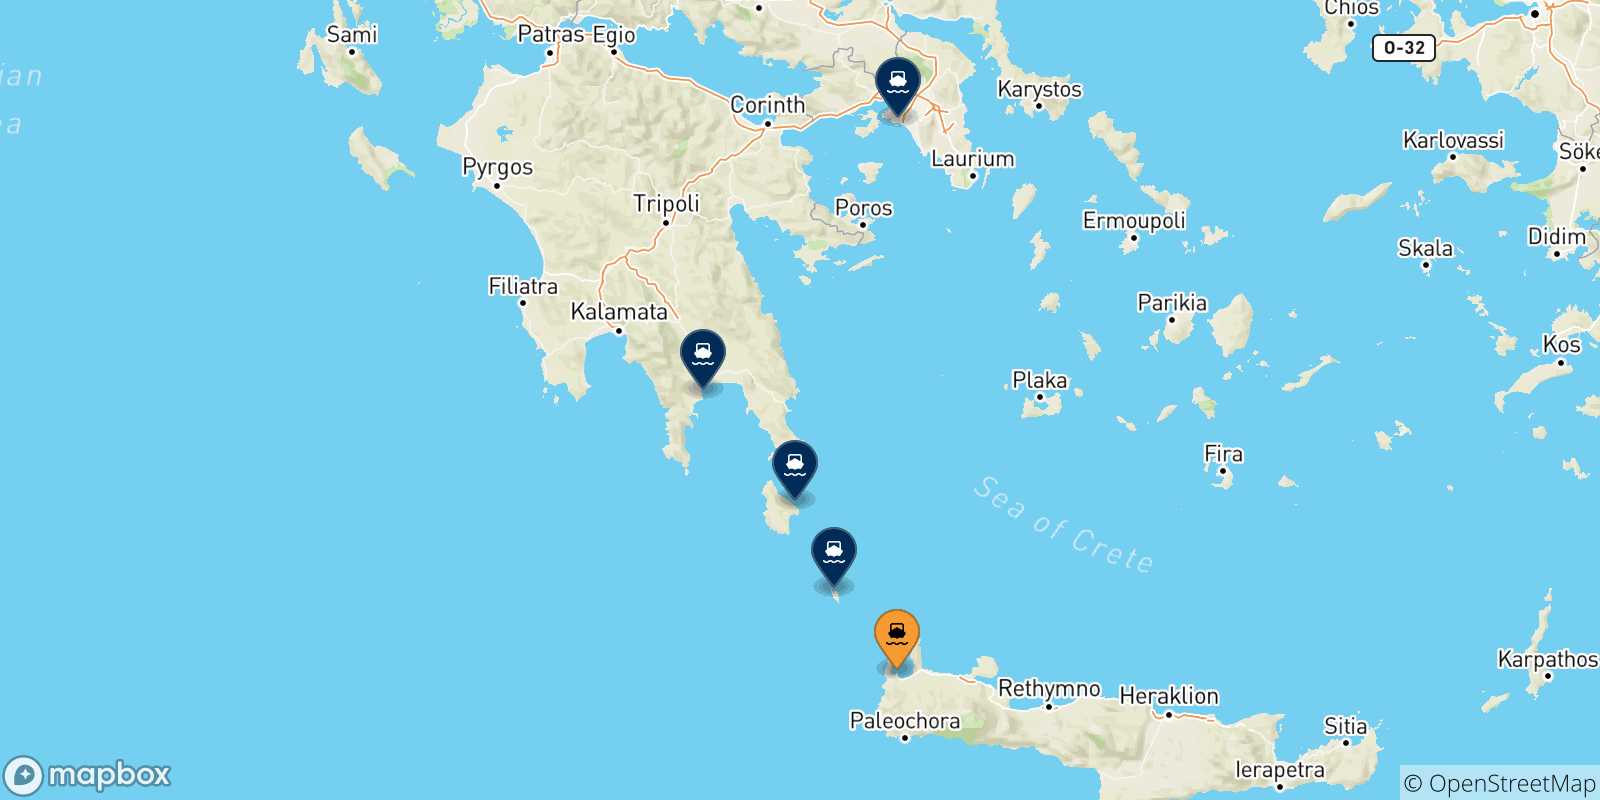 Mappa delle possibili rotte tra Kissamos e la Grecia